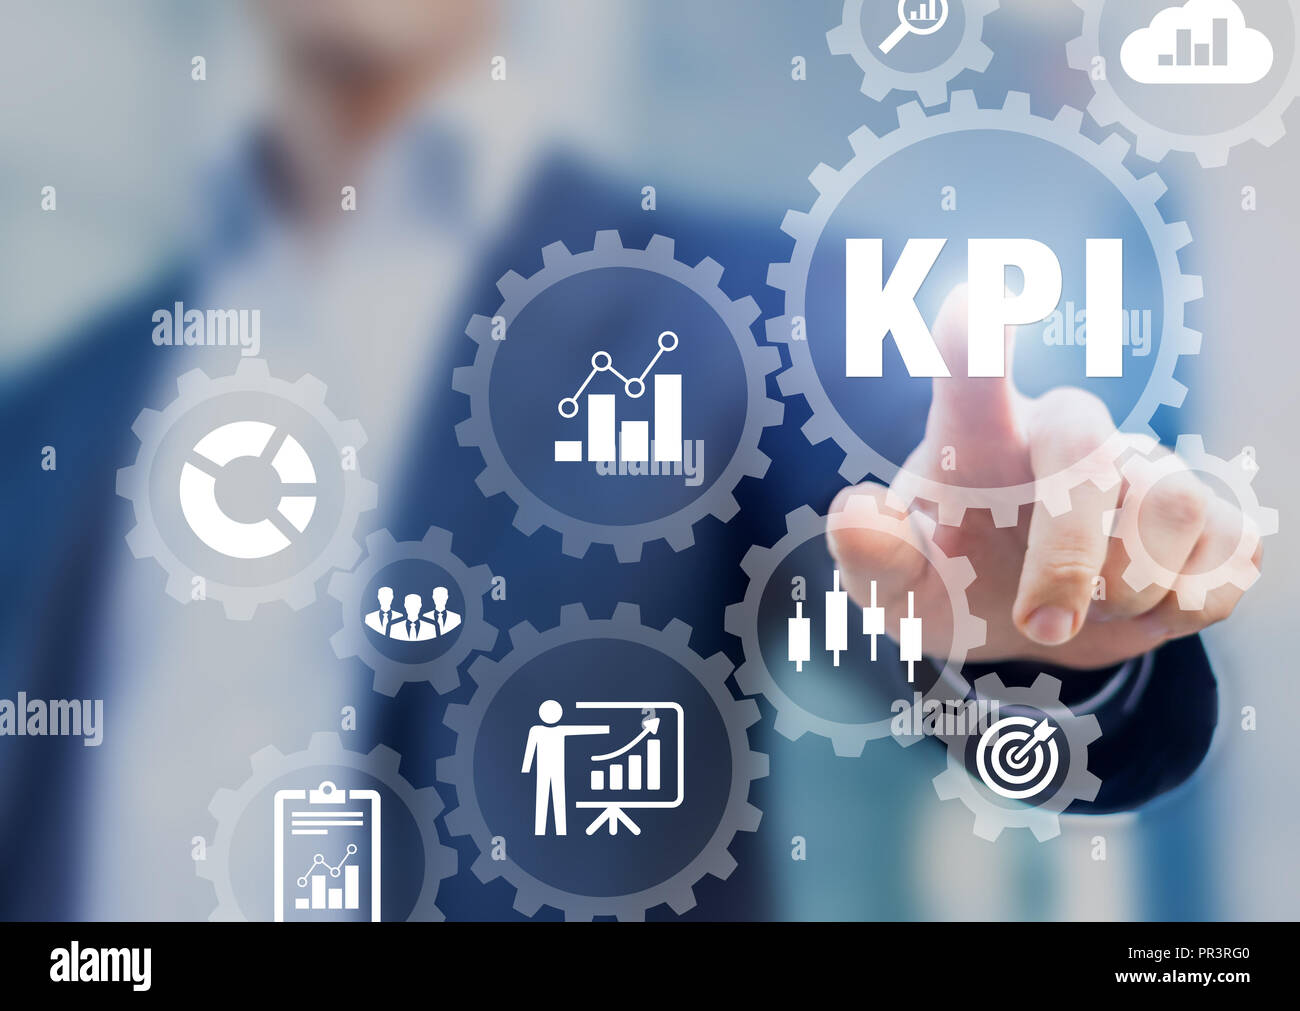 KPI Key Performance Indikatoren Präsentation, Business Development Strategie, Kennzahlen messen Produktion, Vertrieb, Effizienz gegen die geplanten gezielt ein Stockfoto